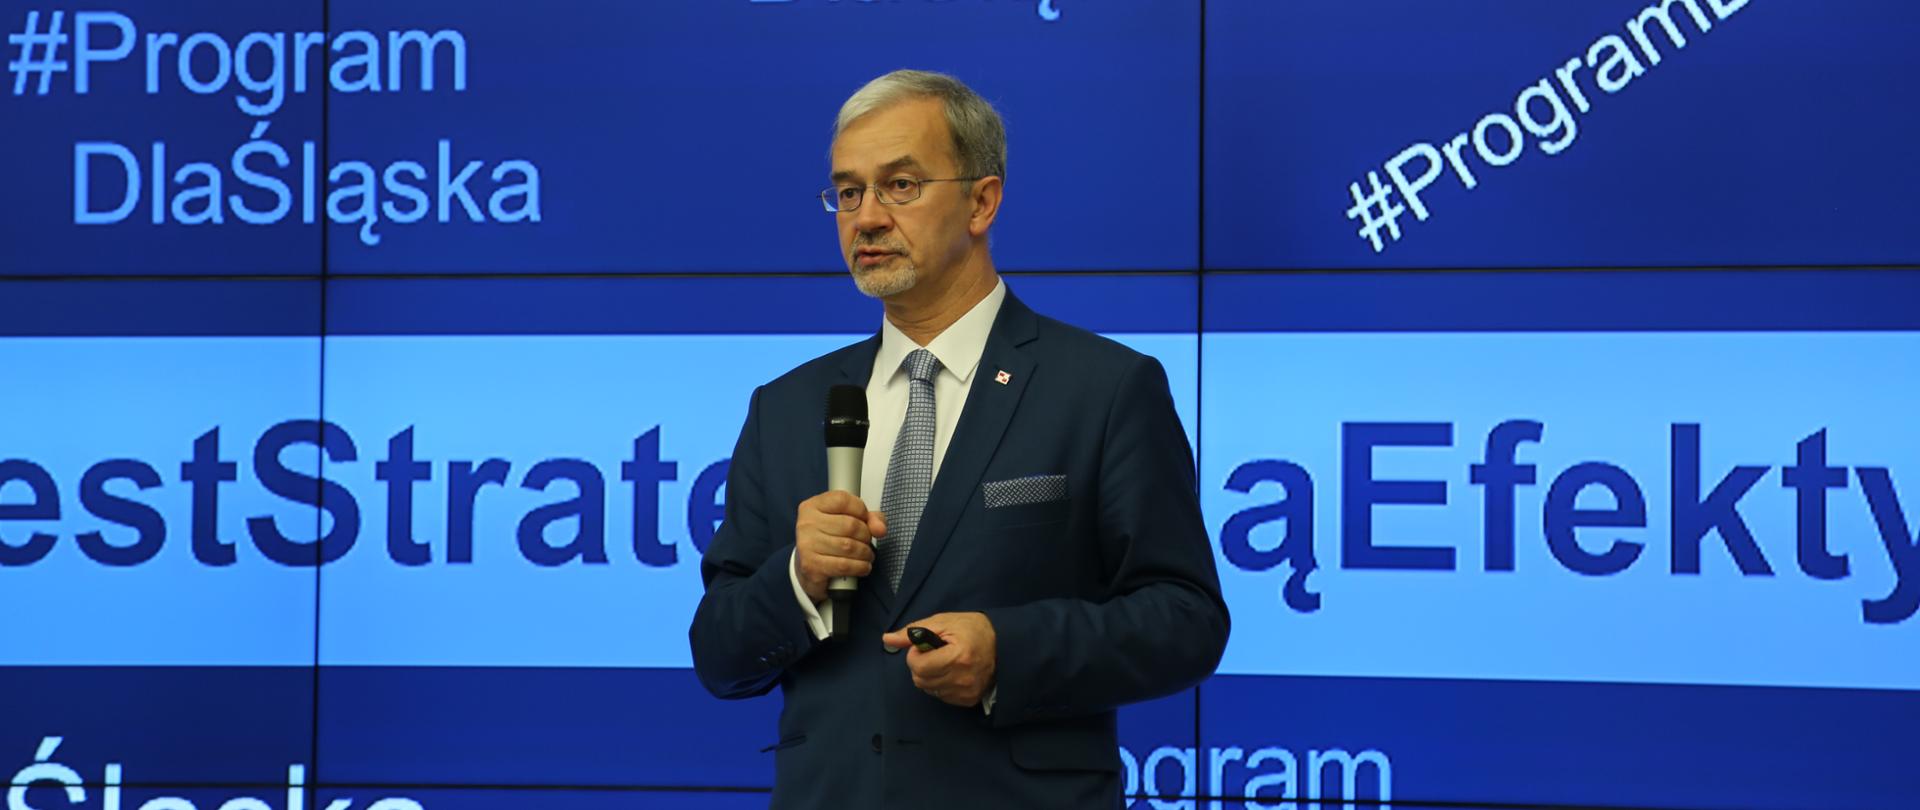 Na tle ekranu z niebieskim tłem i napisami Program dla Śląska stoi minister Jerzy Kwieciński i mówi do mikrofonu, który trzyma w ręku